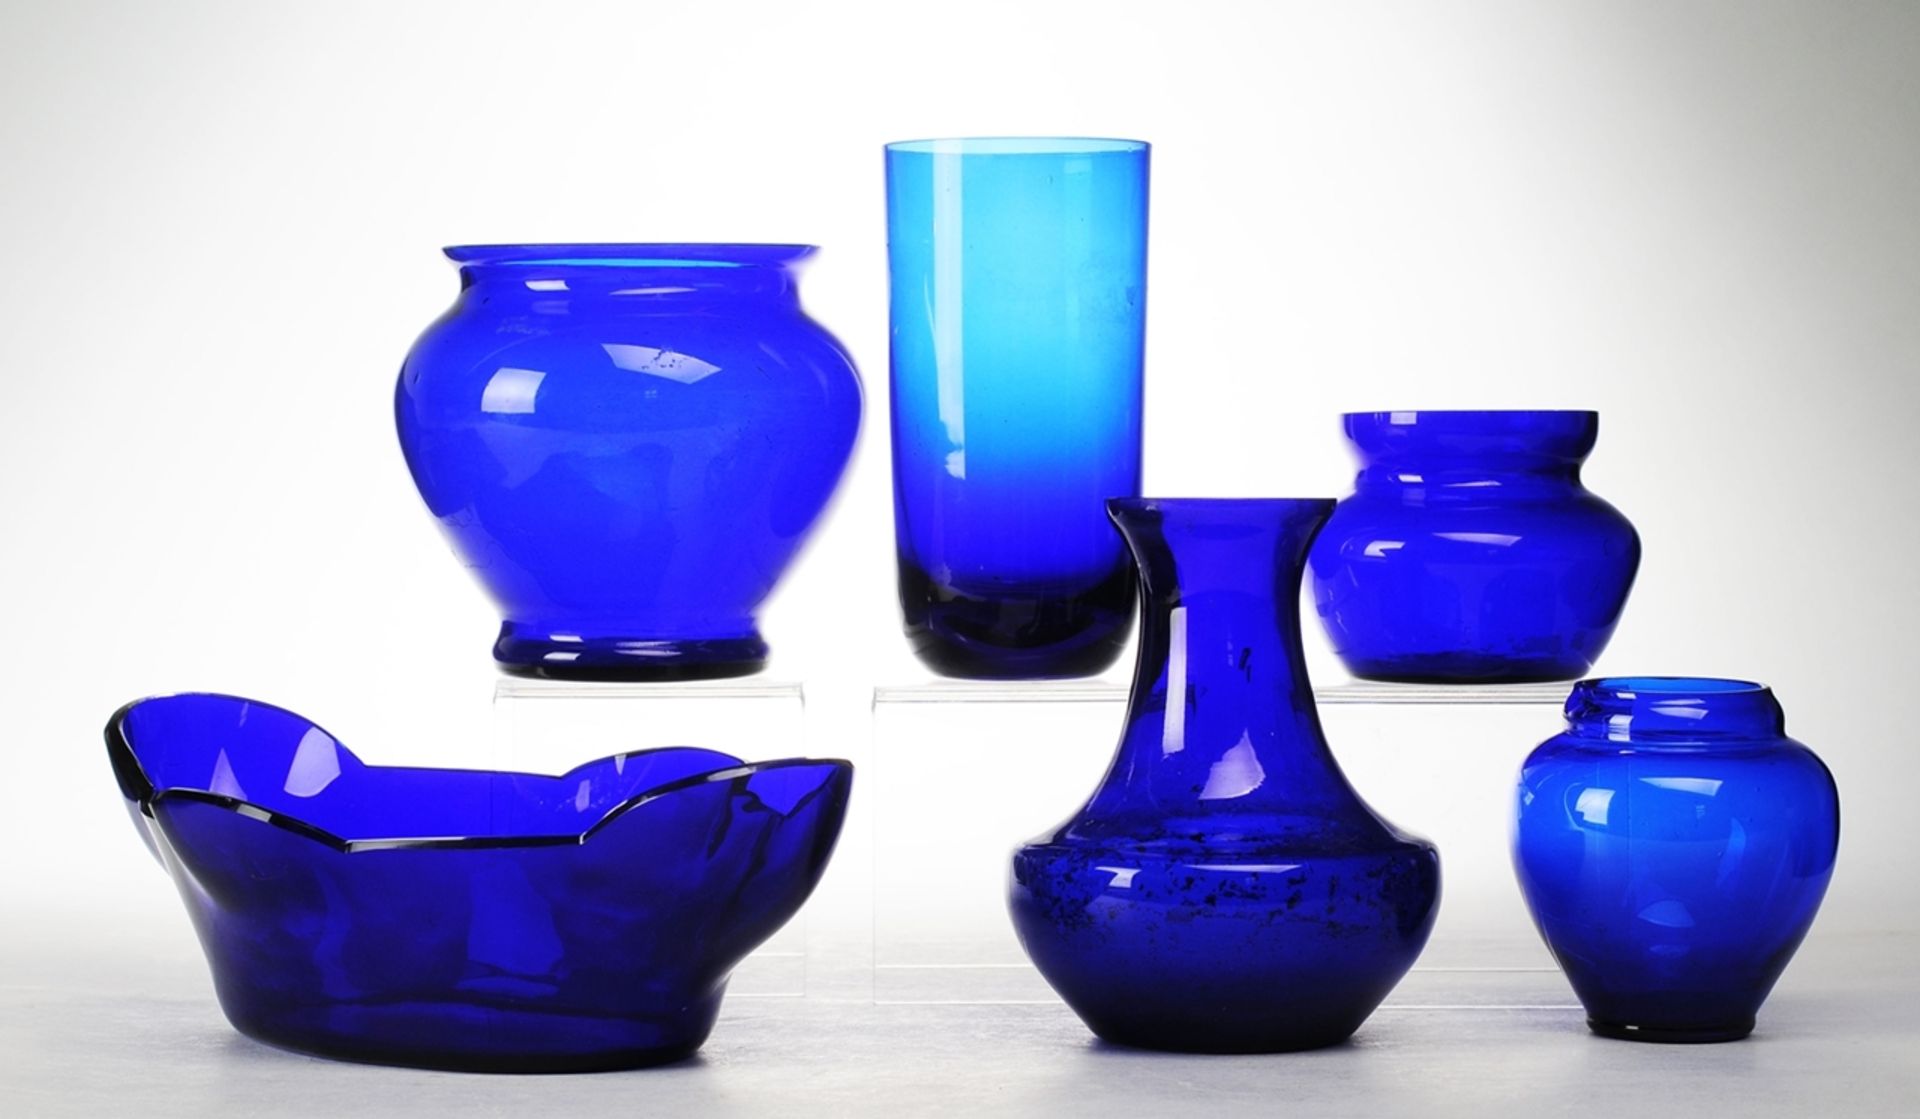 Konvolut blaues Glas6-tlg. 5 Vasen u. Schale. Kobaltblaues Glas. Formgeblasen. Versch. Formen